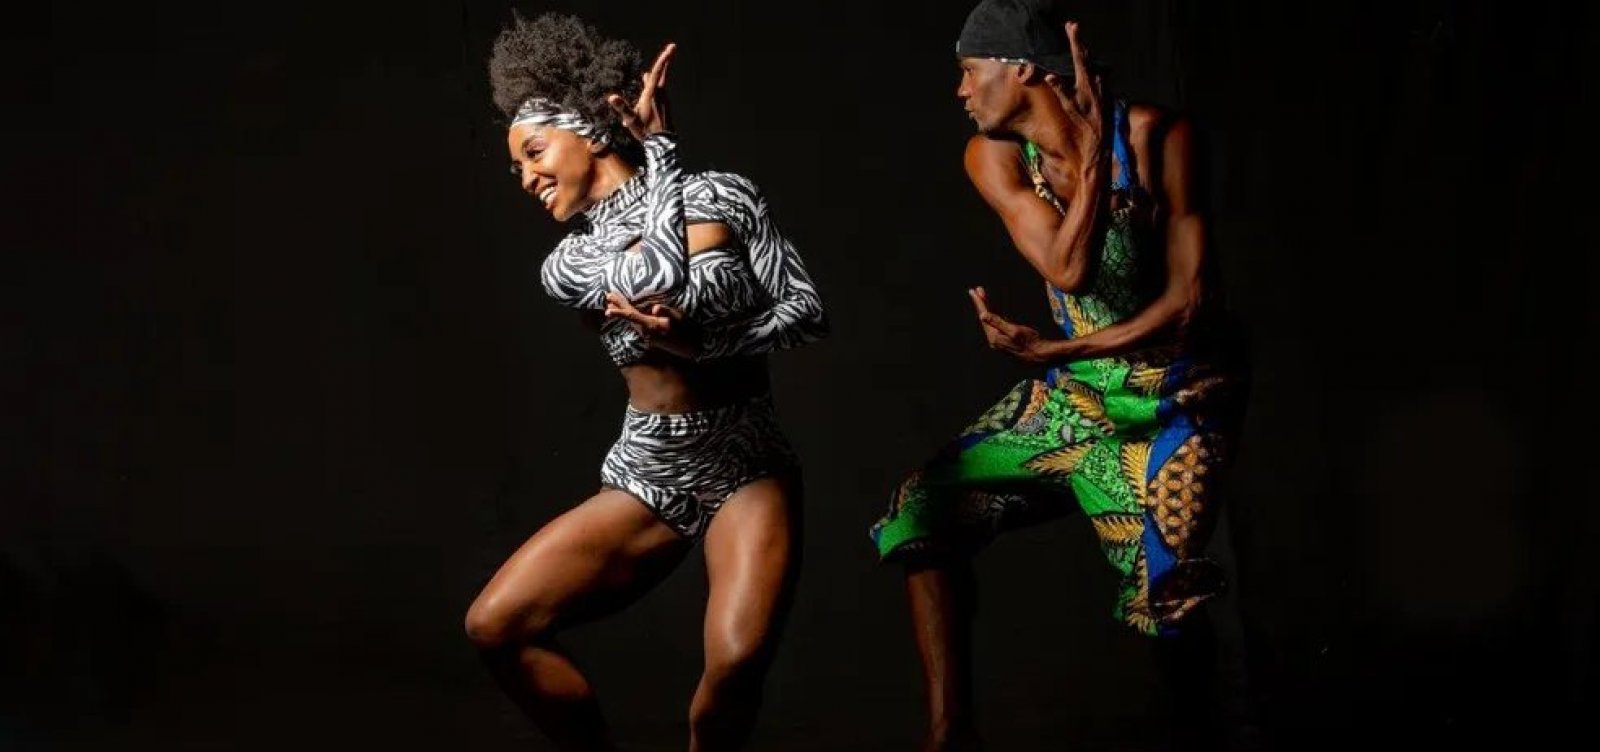 Balé Folclórico da Bahia anuncia espetáculo “O Balé Que Você Não Vê”